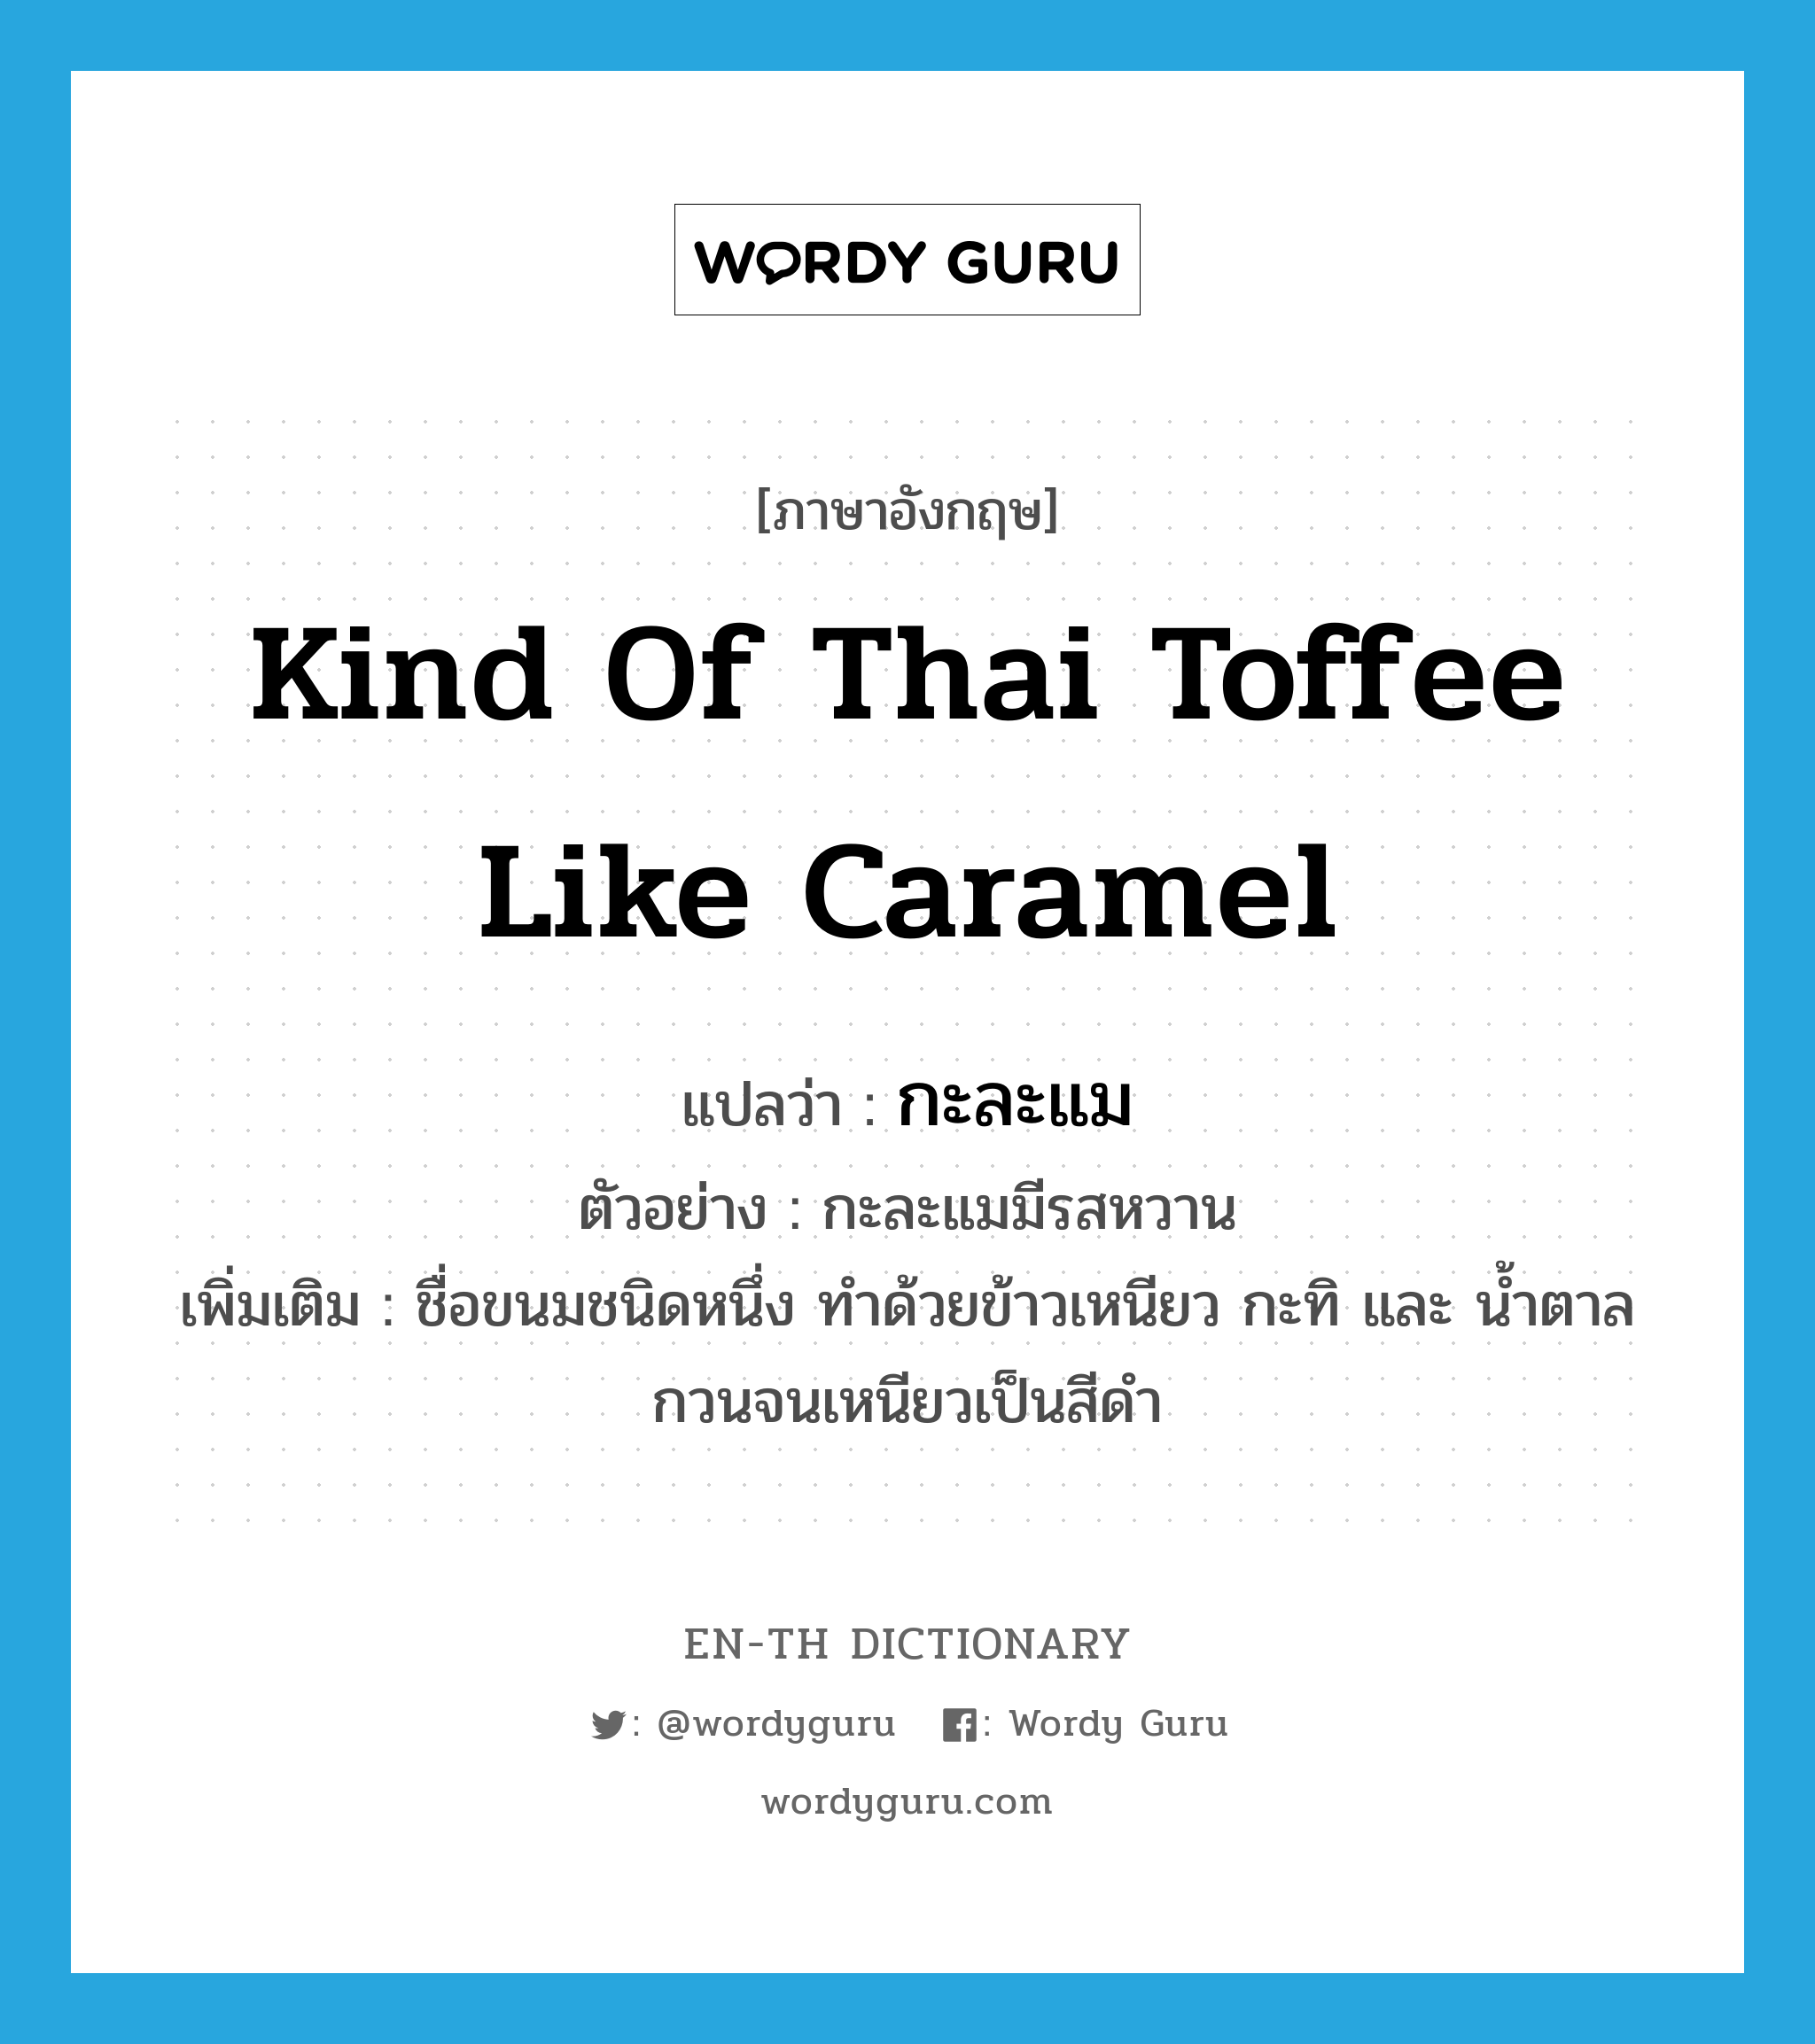 กะละแม ภาษาอังกฤษ?, คำศัพท์ภาษาอังกฤษ กะละแม แปลว่า kind of Thai toffee like caramel ประเภท N ตัวอย่าง กะละแมมีรสหวาน เพิ่มเติม ชื่อขนมชนิดหนึ่ง ทำด้วยข้าวเหนียว กะทิ และ น้ำตาล กวนจนเหนียวเป็นสีดำ หมวด N